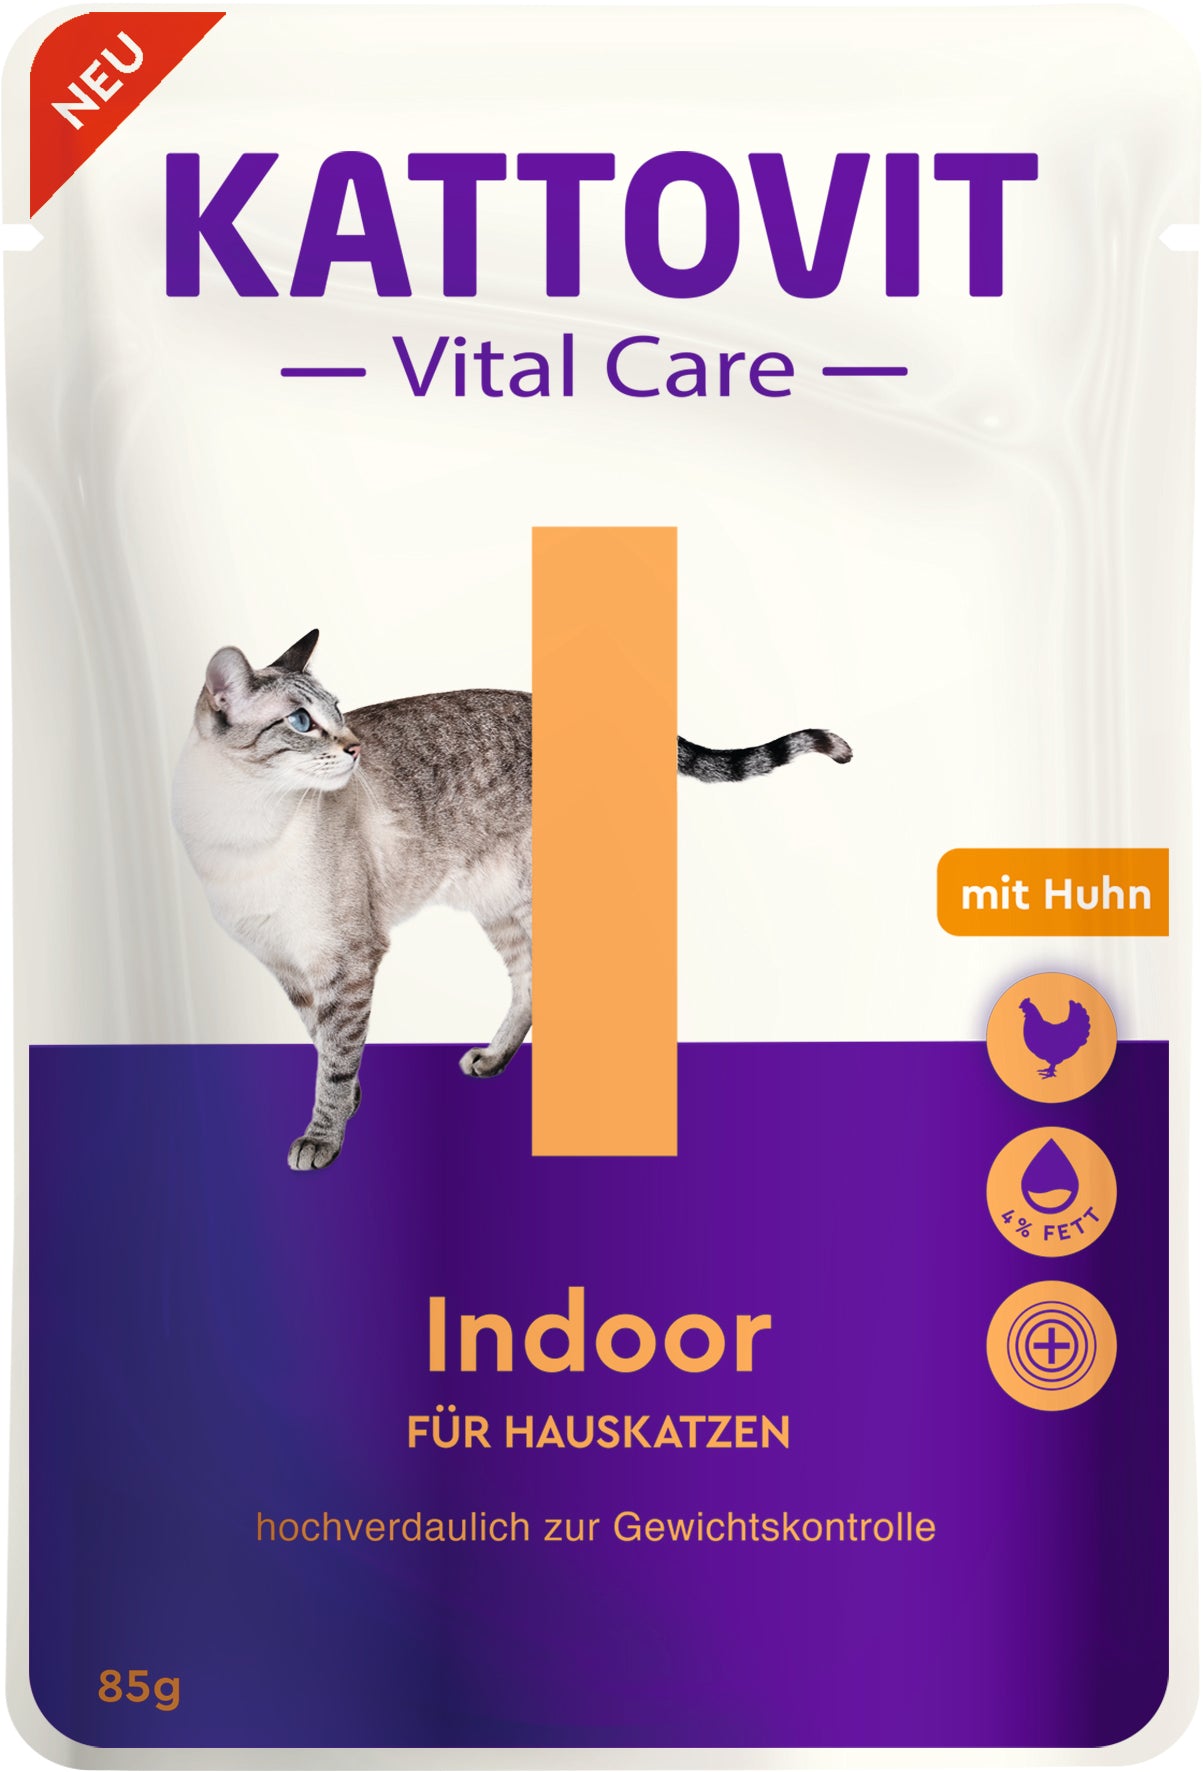 Artikel mit dem Namen Kattovit Pouchbeutel Vital Care Indoor im Shop von zoo.de , dem Onlineshop für nachhaltiges Hundefutter und Katzenfutter.